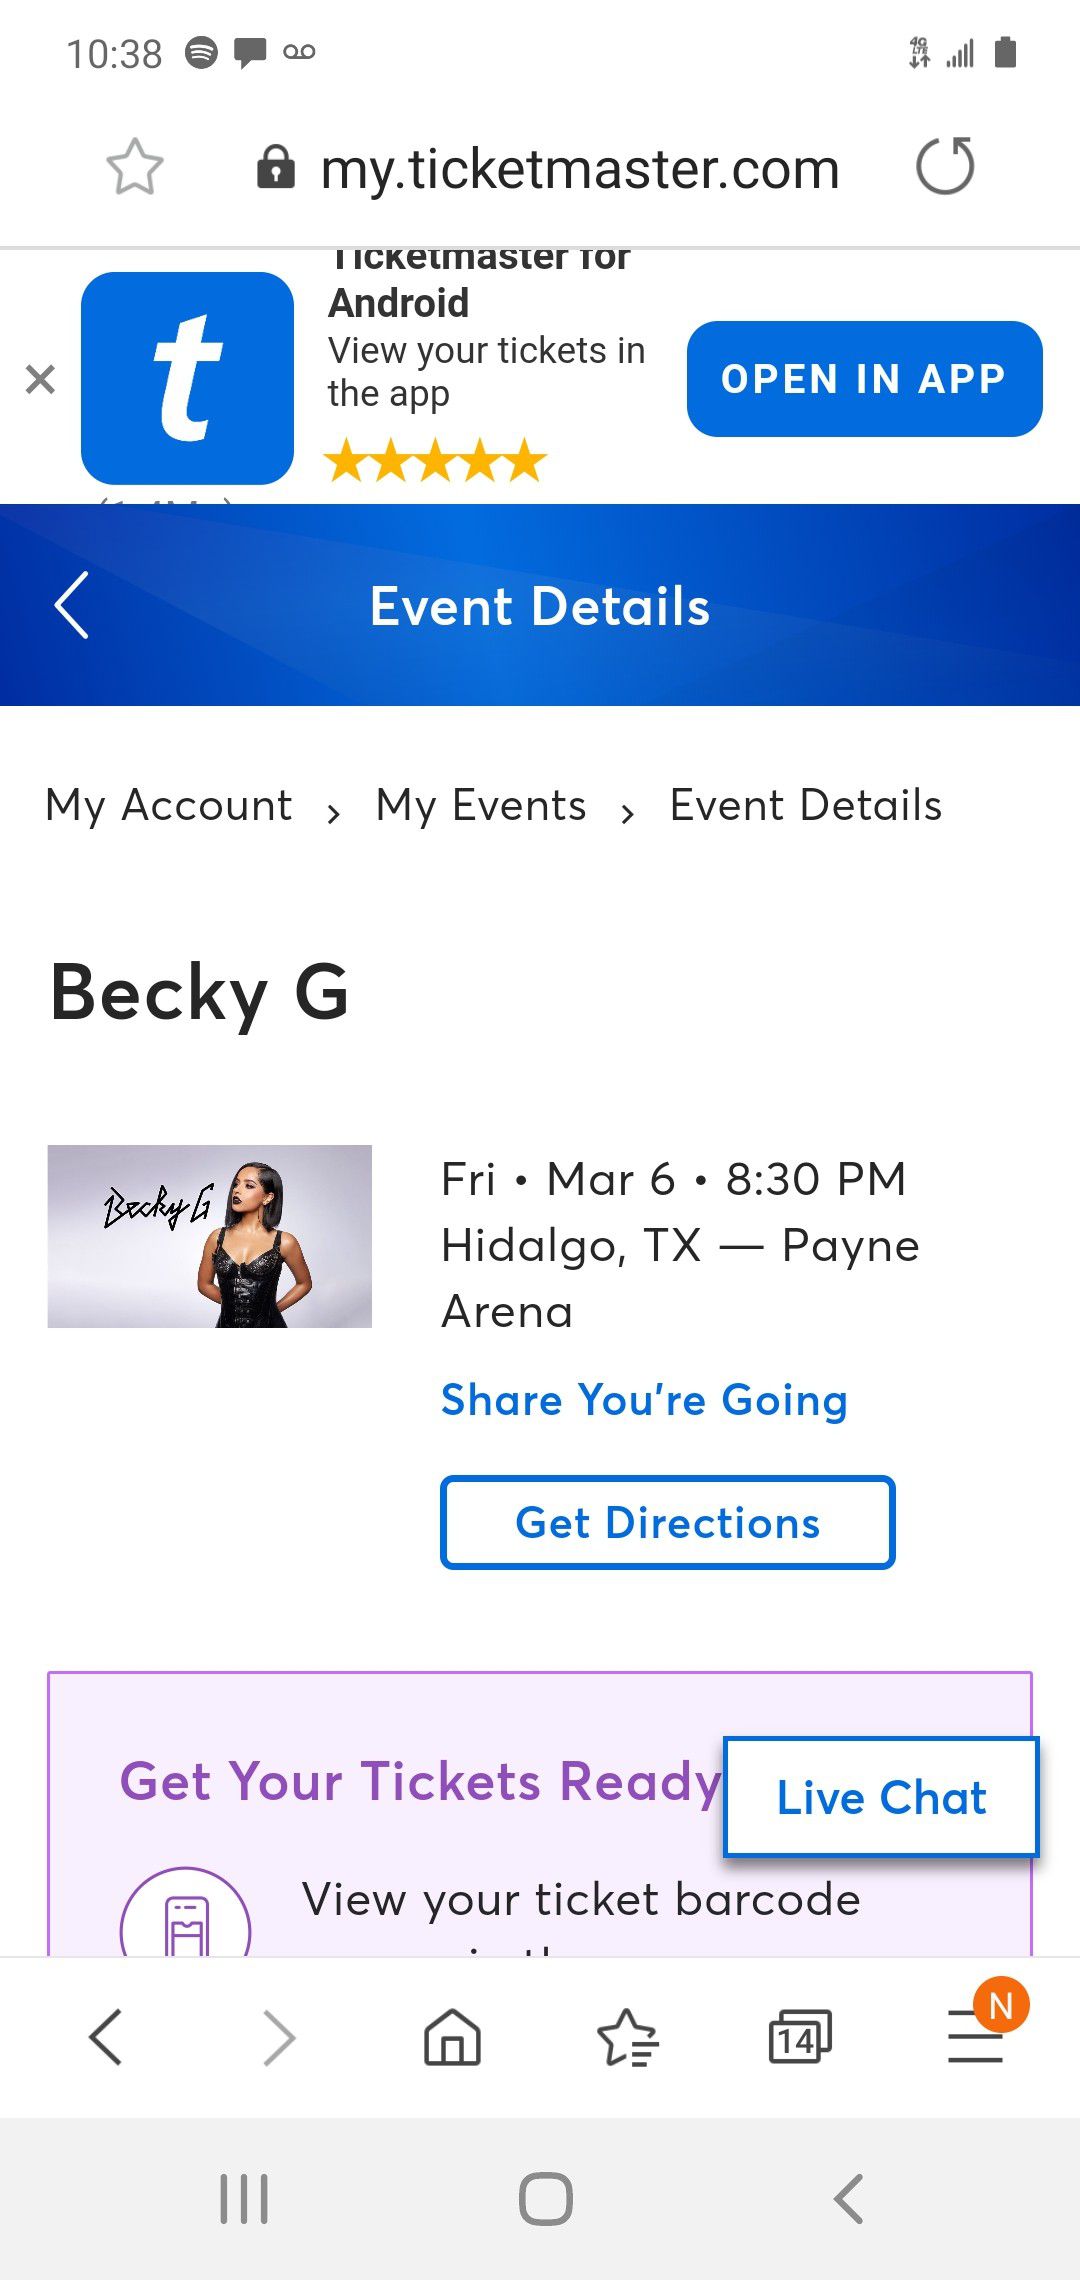 Becky G, 2 floor for $100